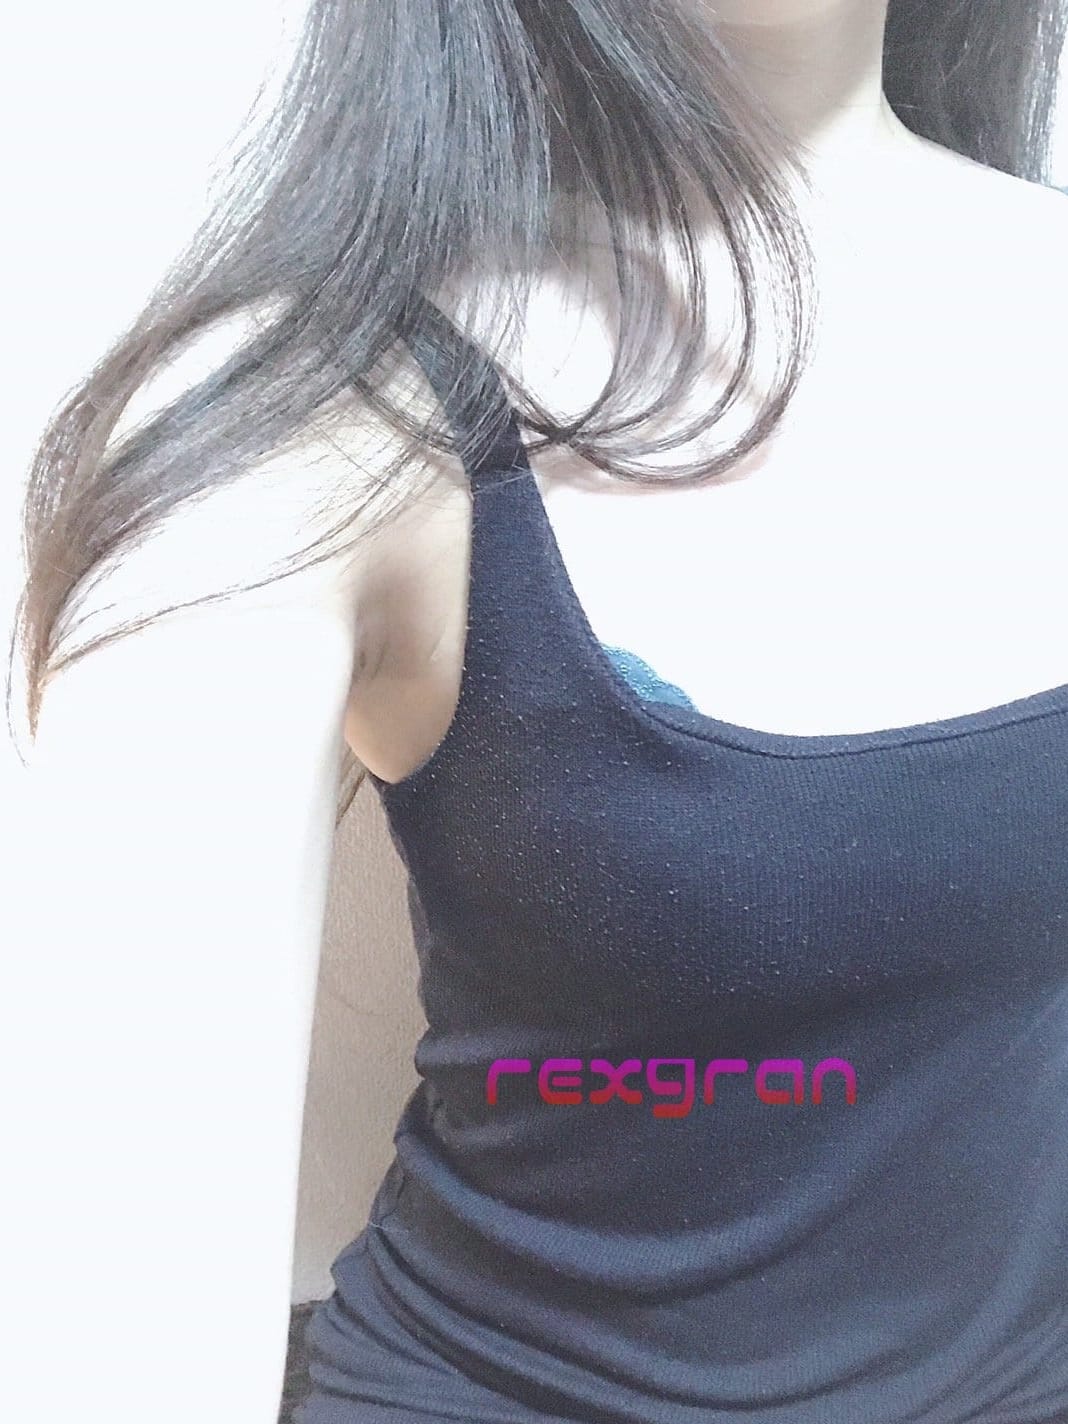 じゅり | rexgran(レクスグラン)